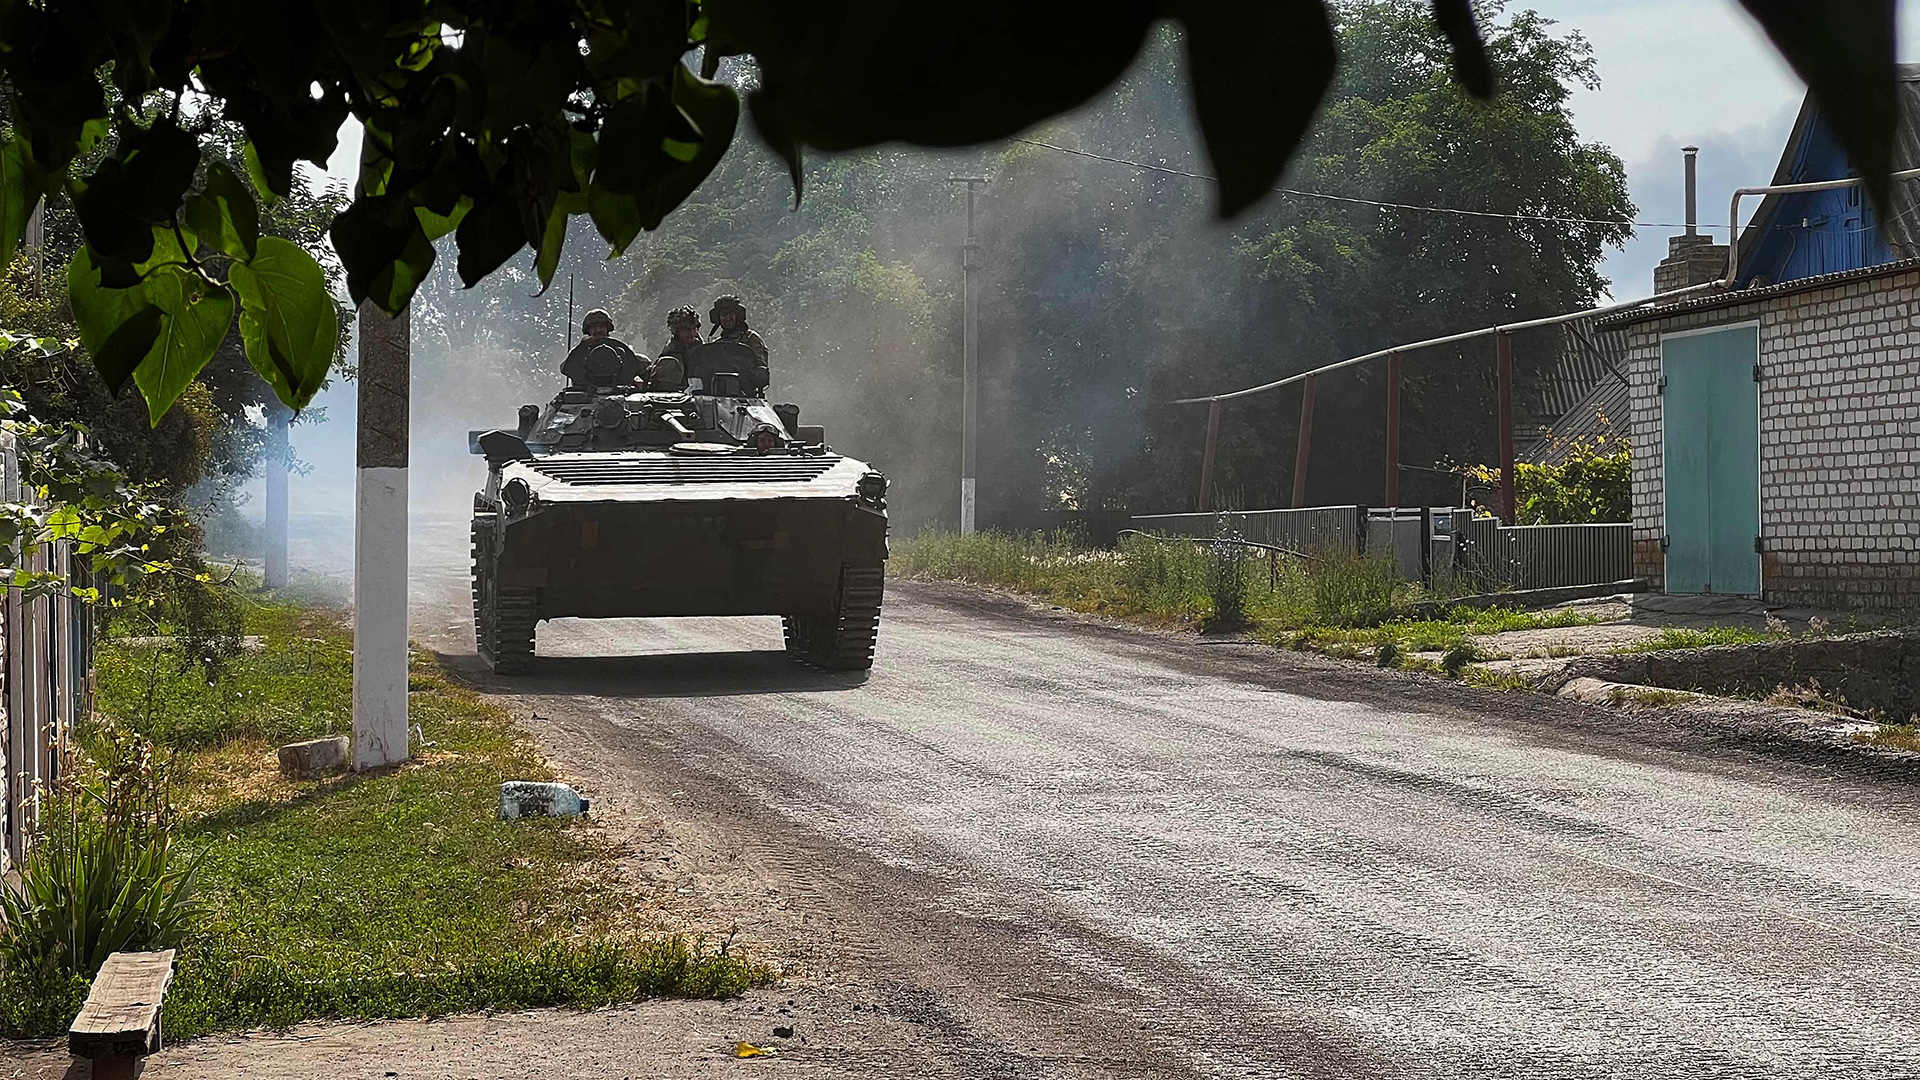 Ukrainische Soldaten fahren in einem gepanzerten Fahrzeug auf der Hauptstraße nach Lyssytschansk in der ostukrainischen Region Donbas. | AFP